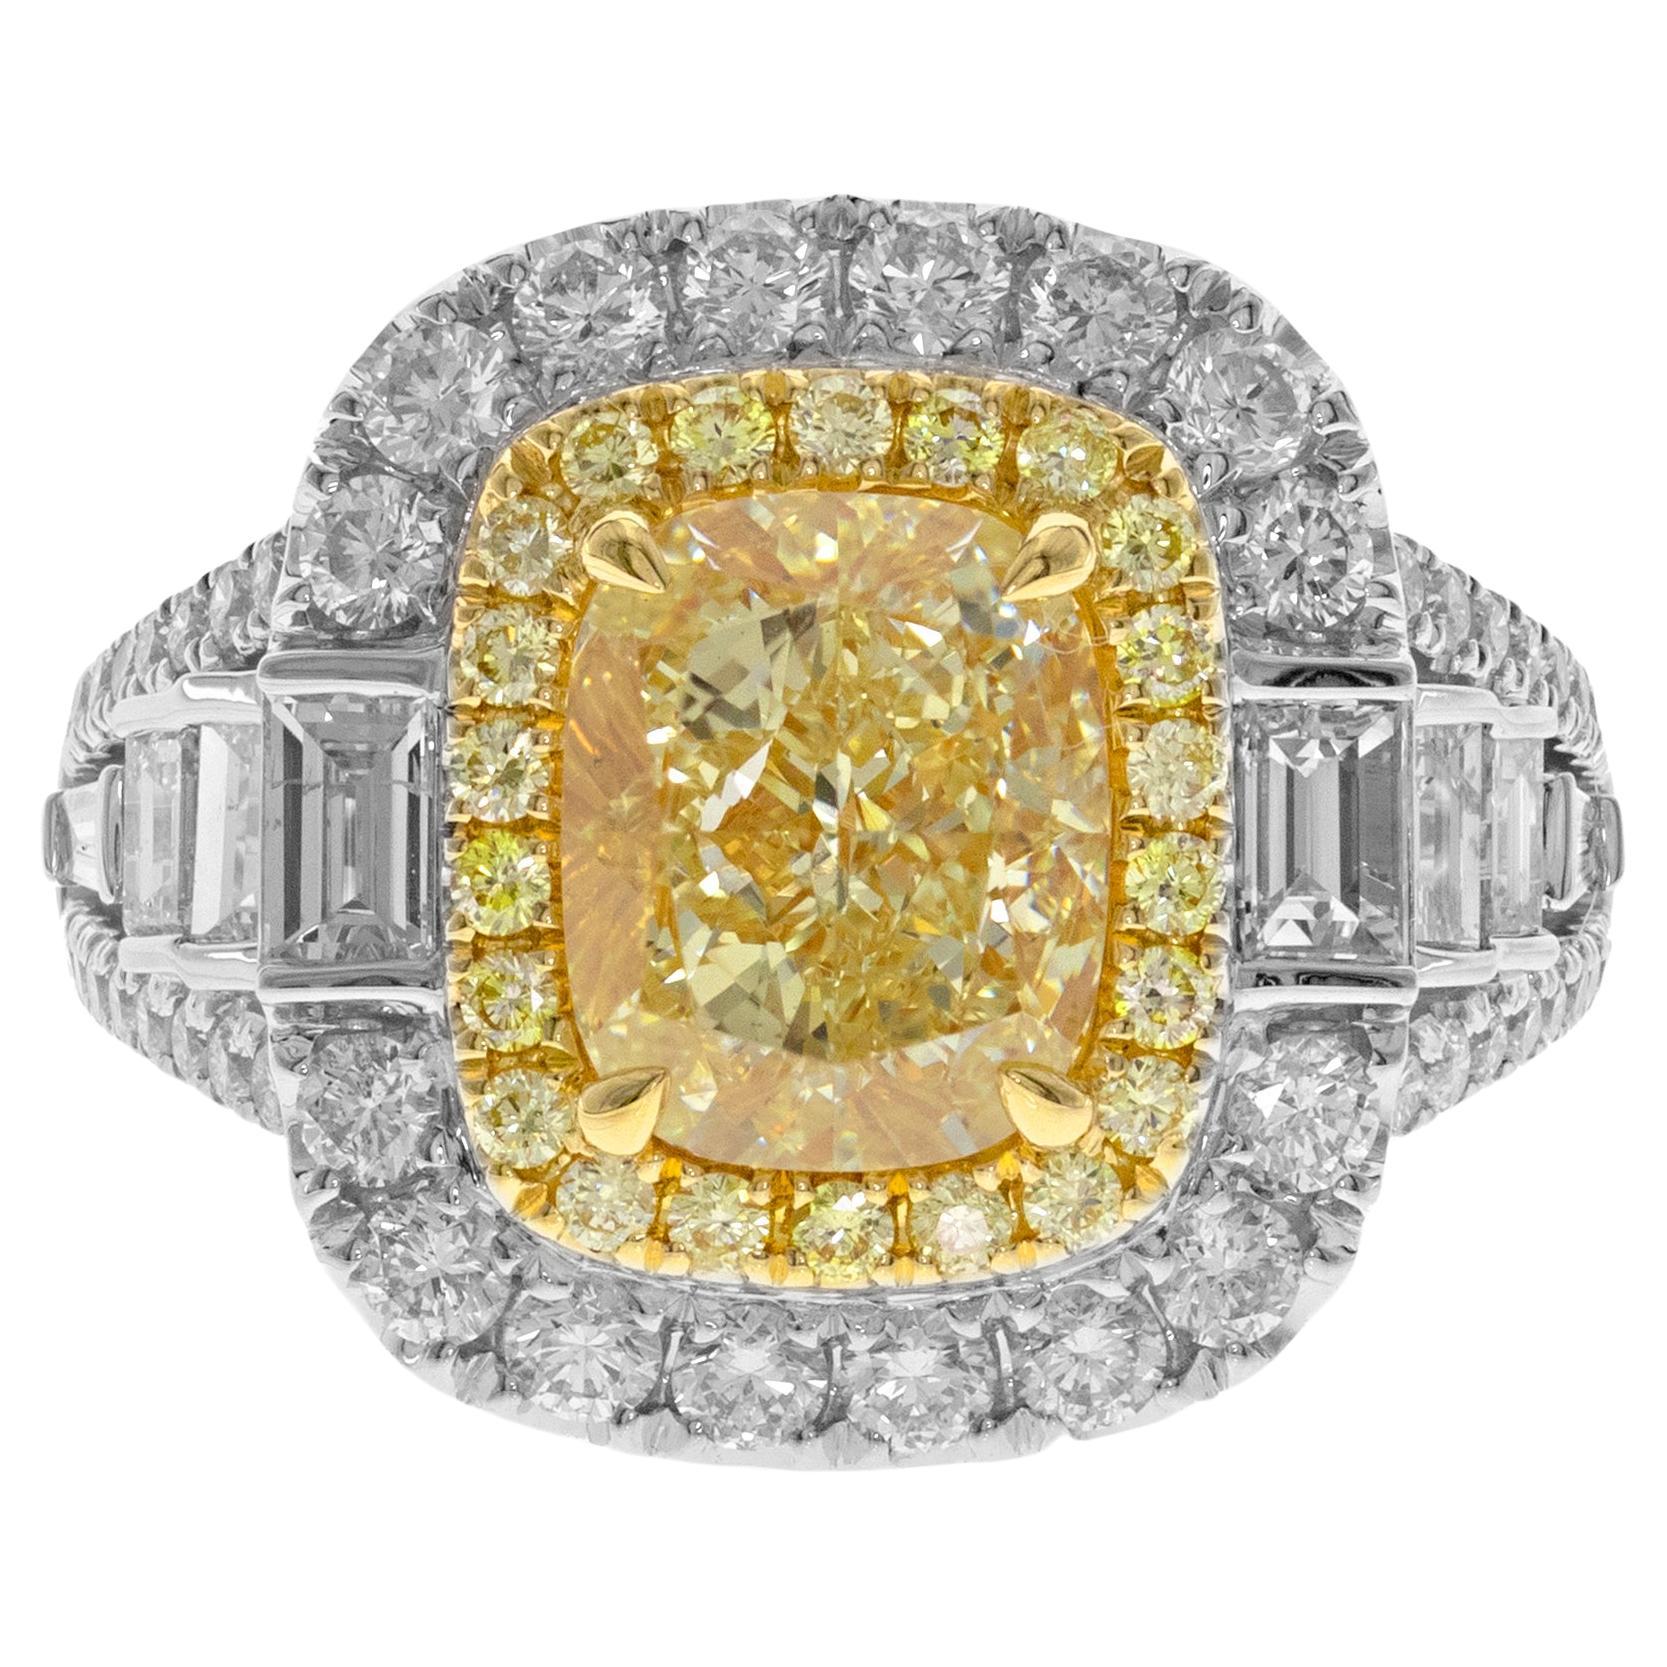 Gin & Grace Ring aus 18 Karat TT Gold mit gelbem Diamanten im Kissenschliff und weißen Diamanten